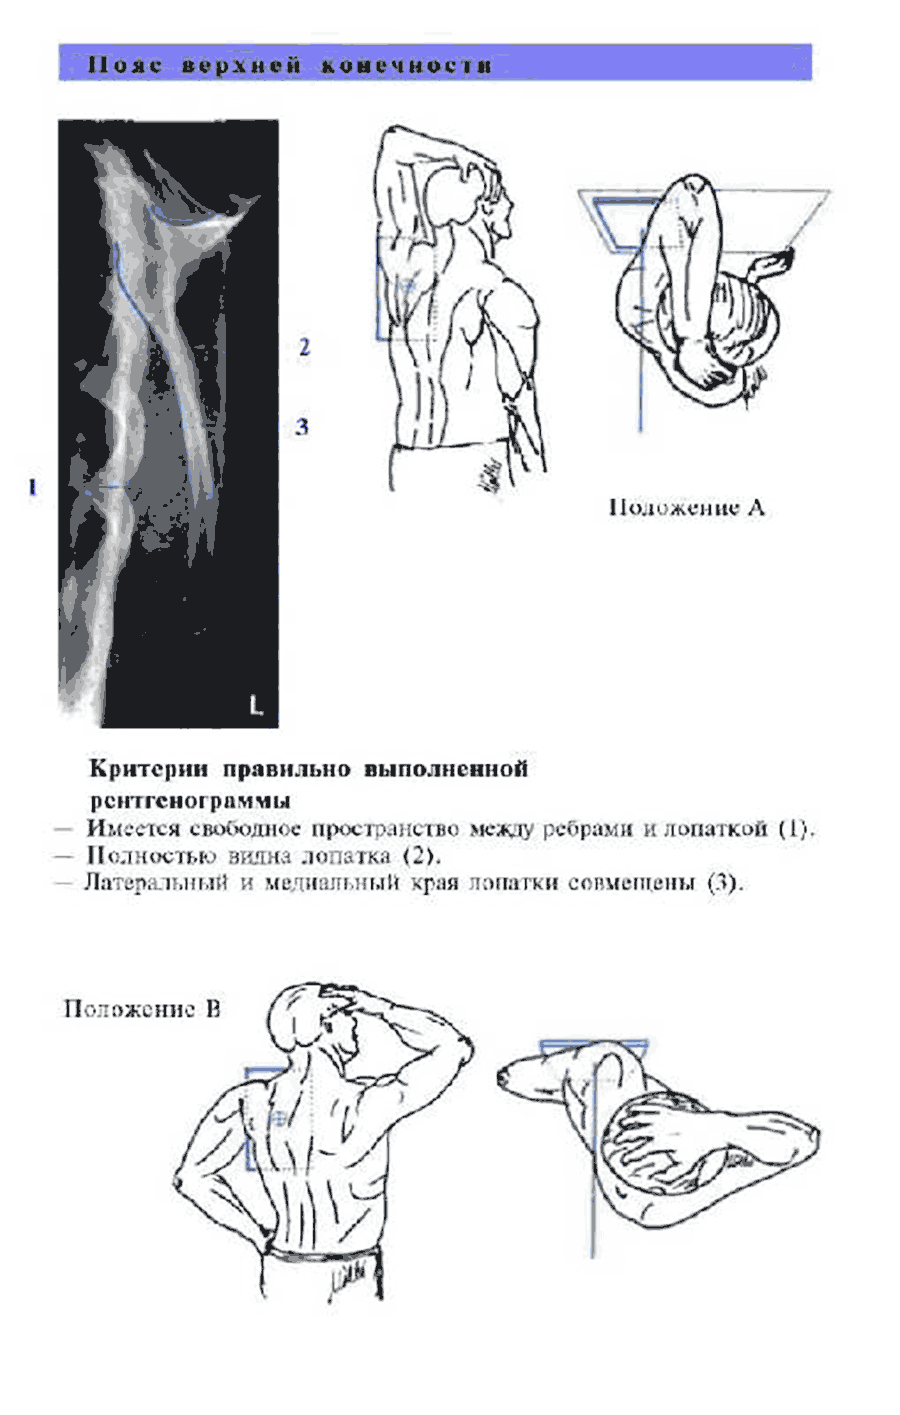 Пример страницы из книги "Атлас рентгенологических укладок" - Торстен Б. Меллер, Эмиль Райф